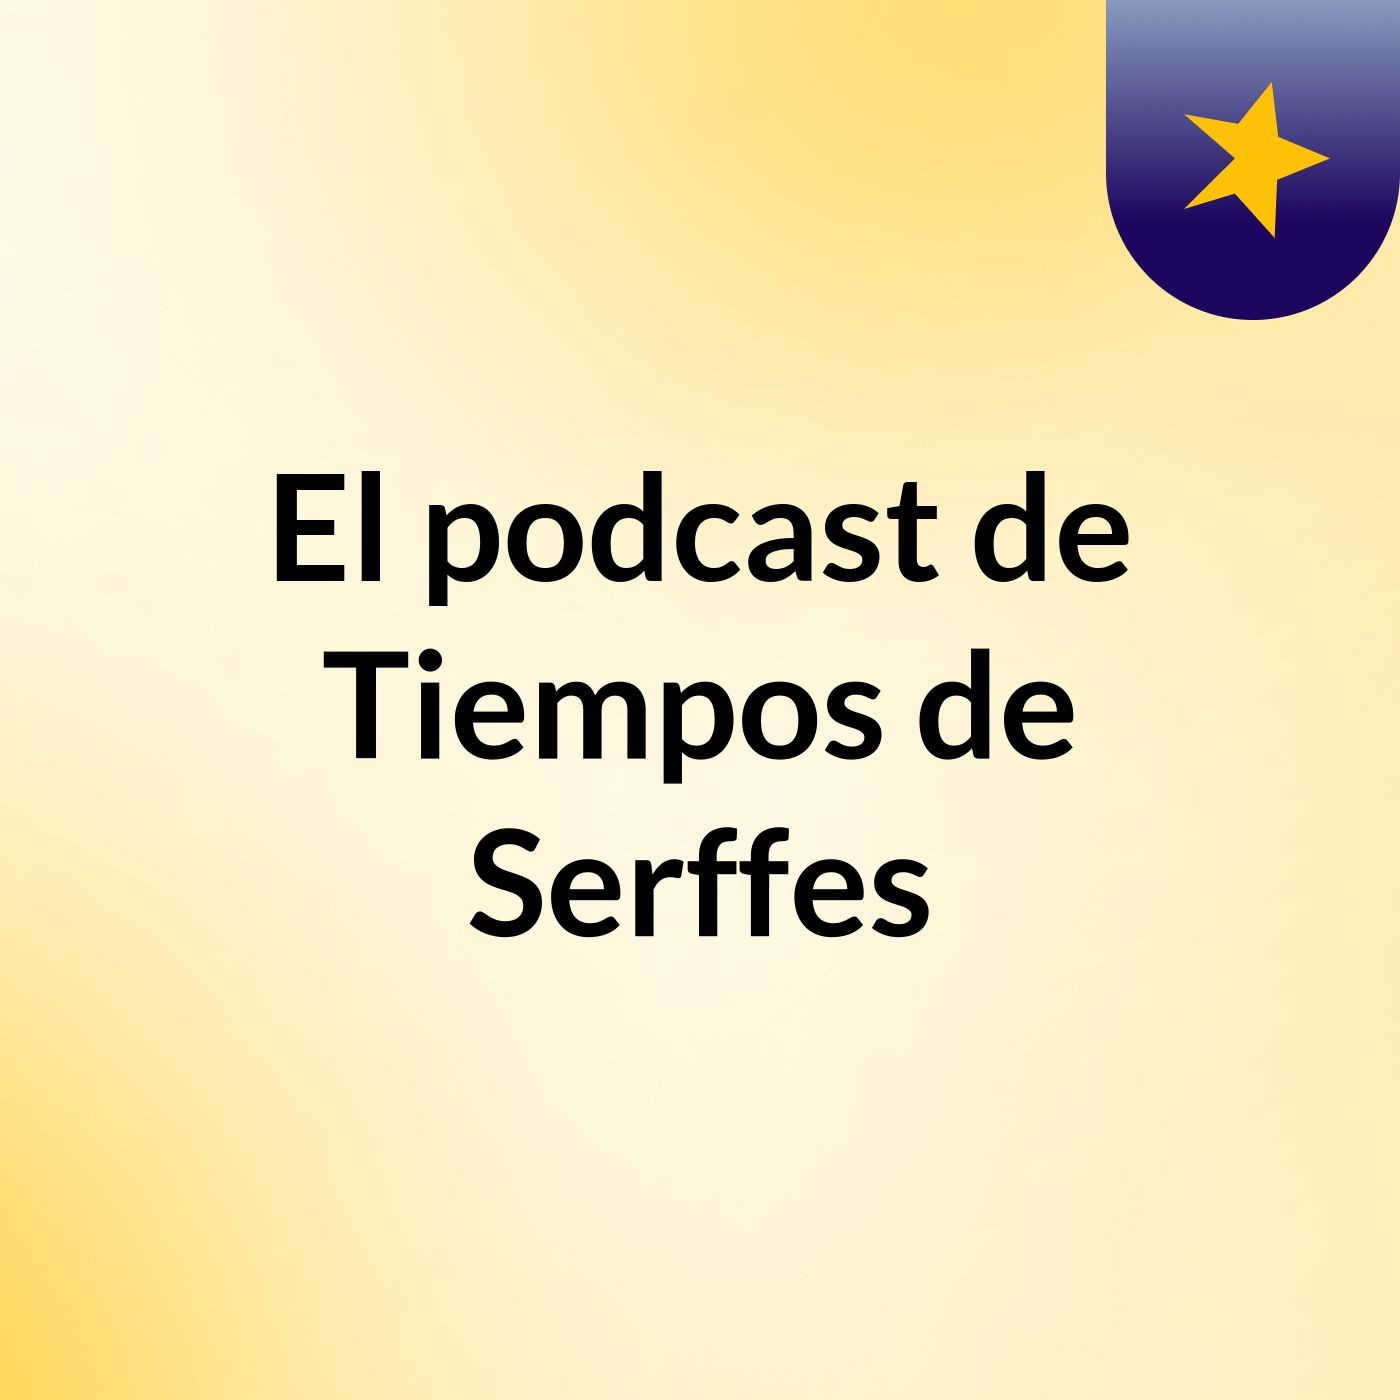 Episodio 41 - El podcast de Tiempos de Serffes